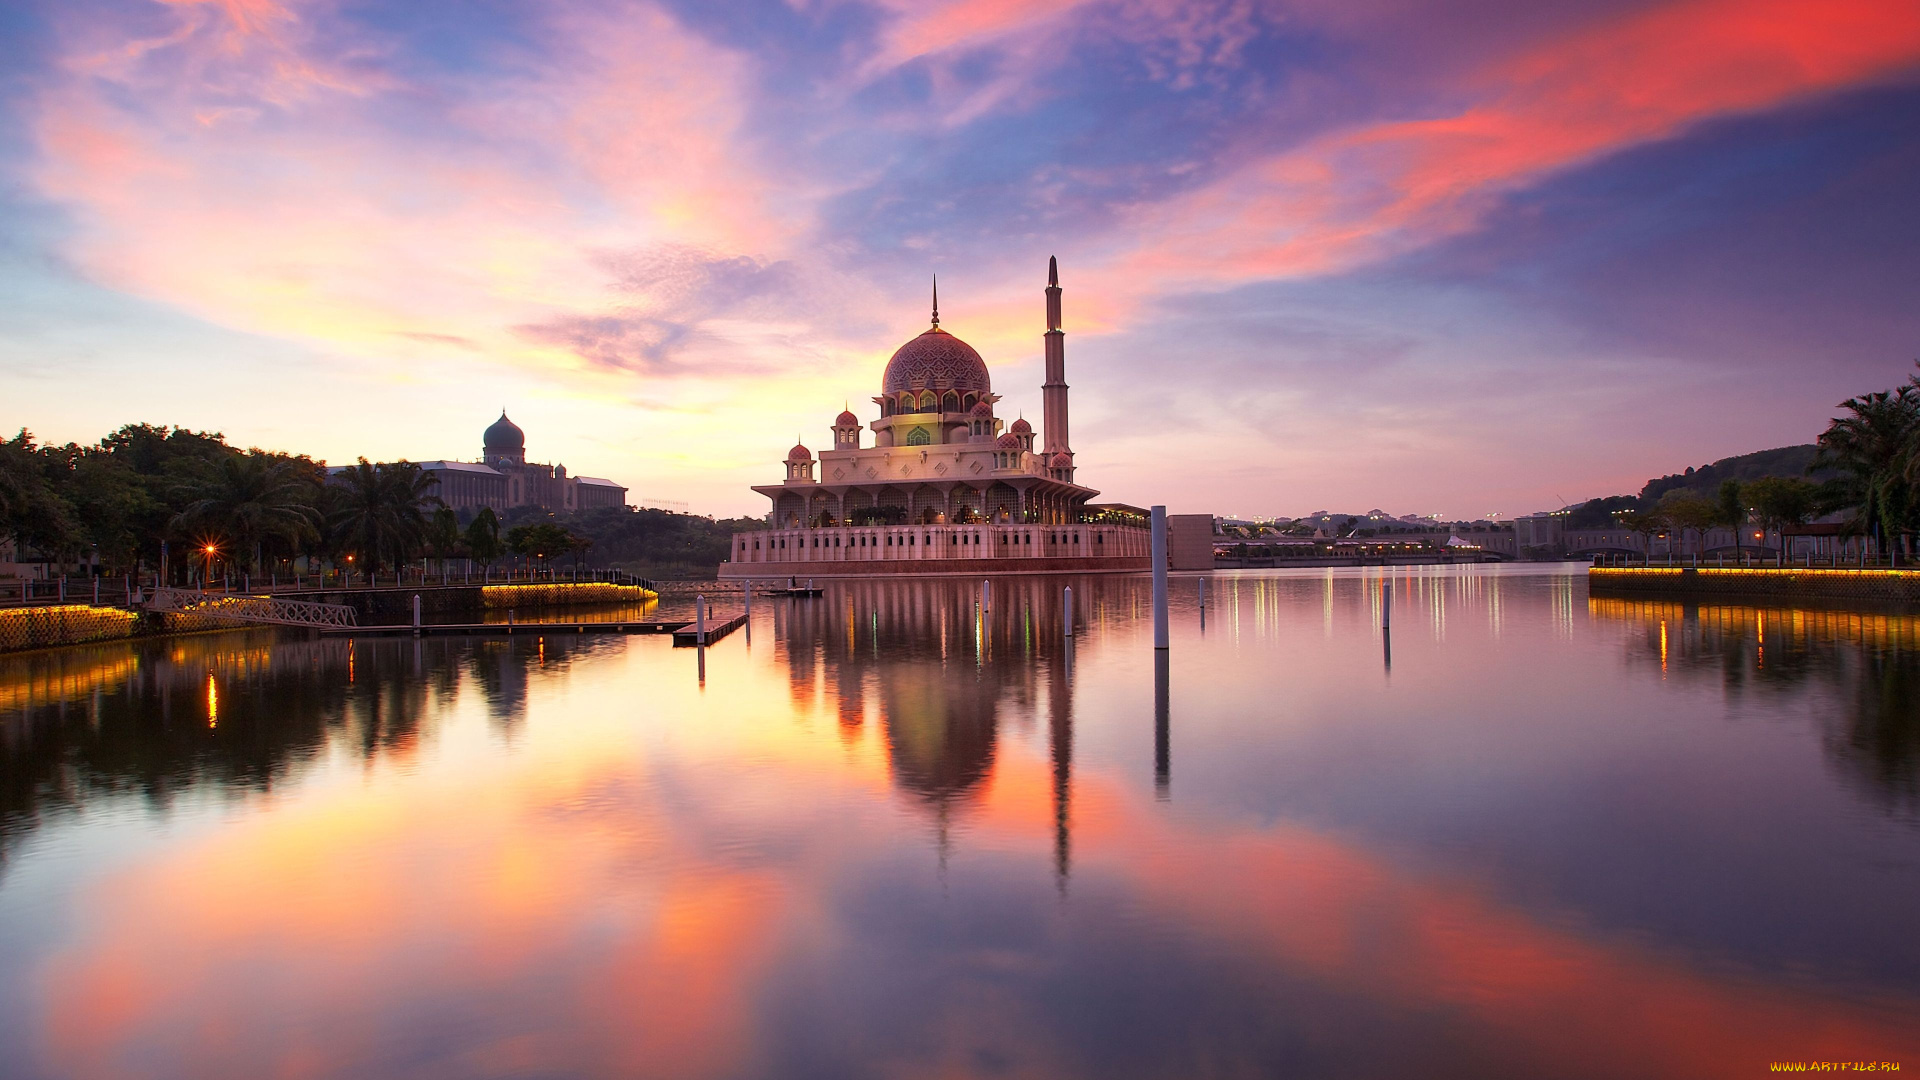 malaysia, города, -, мечети, , медресе, храм, мечеть, отражение, вода, вечер